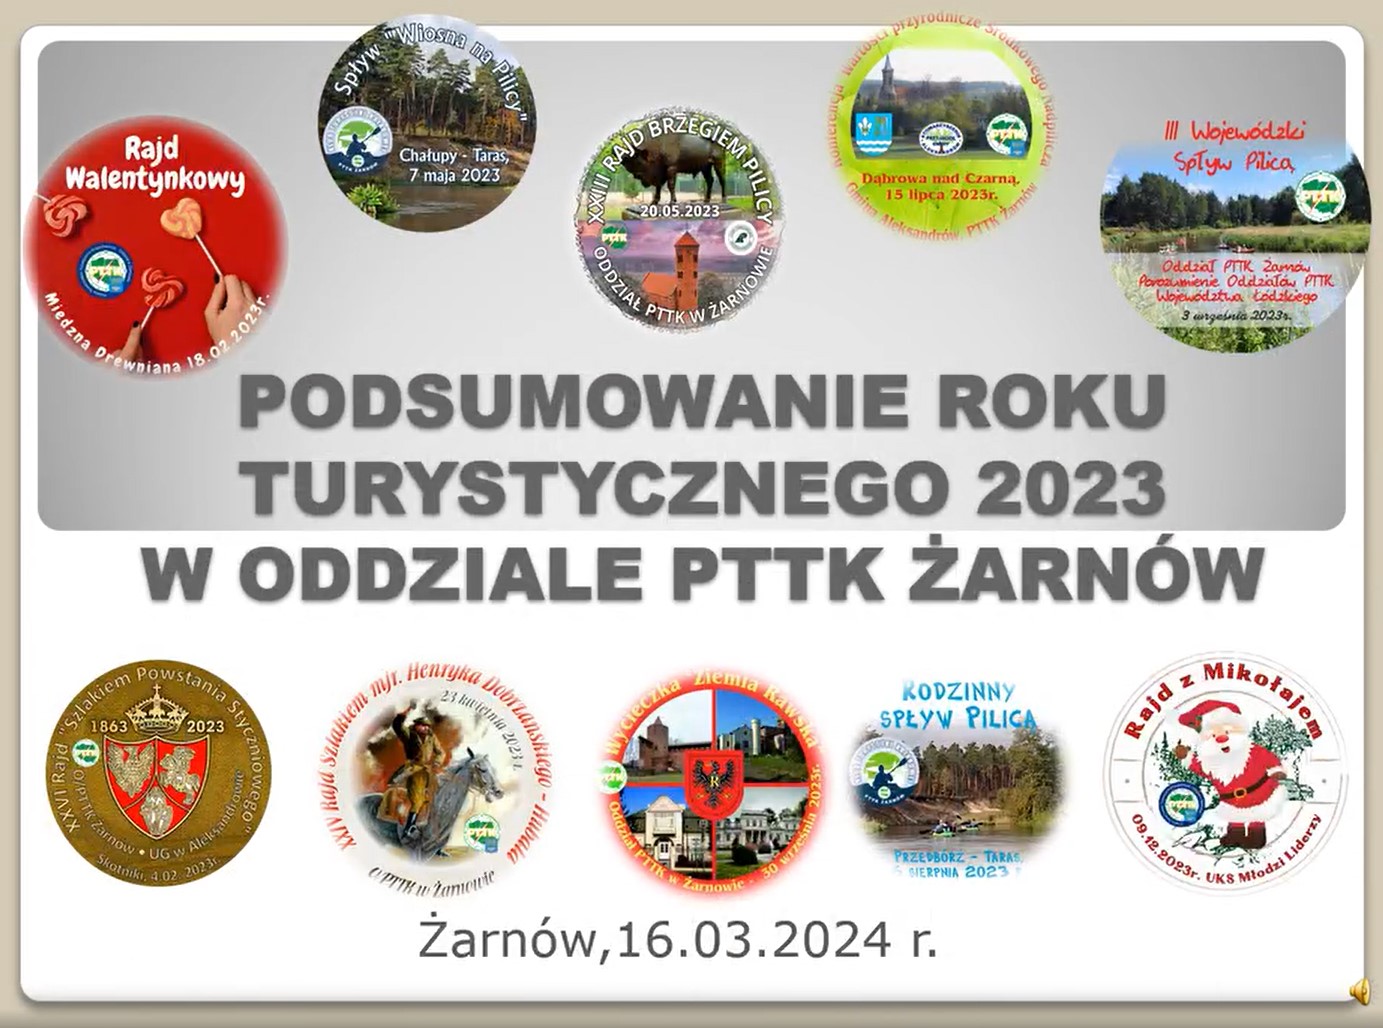 Prezentacja podsumowanie roku turystycznego 2023 PTTK